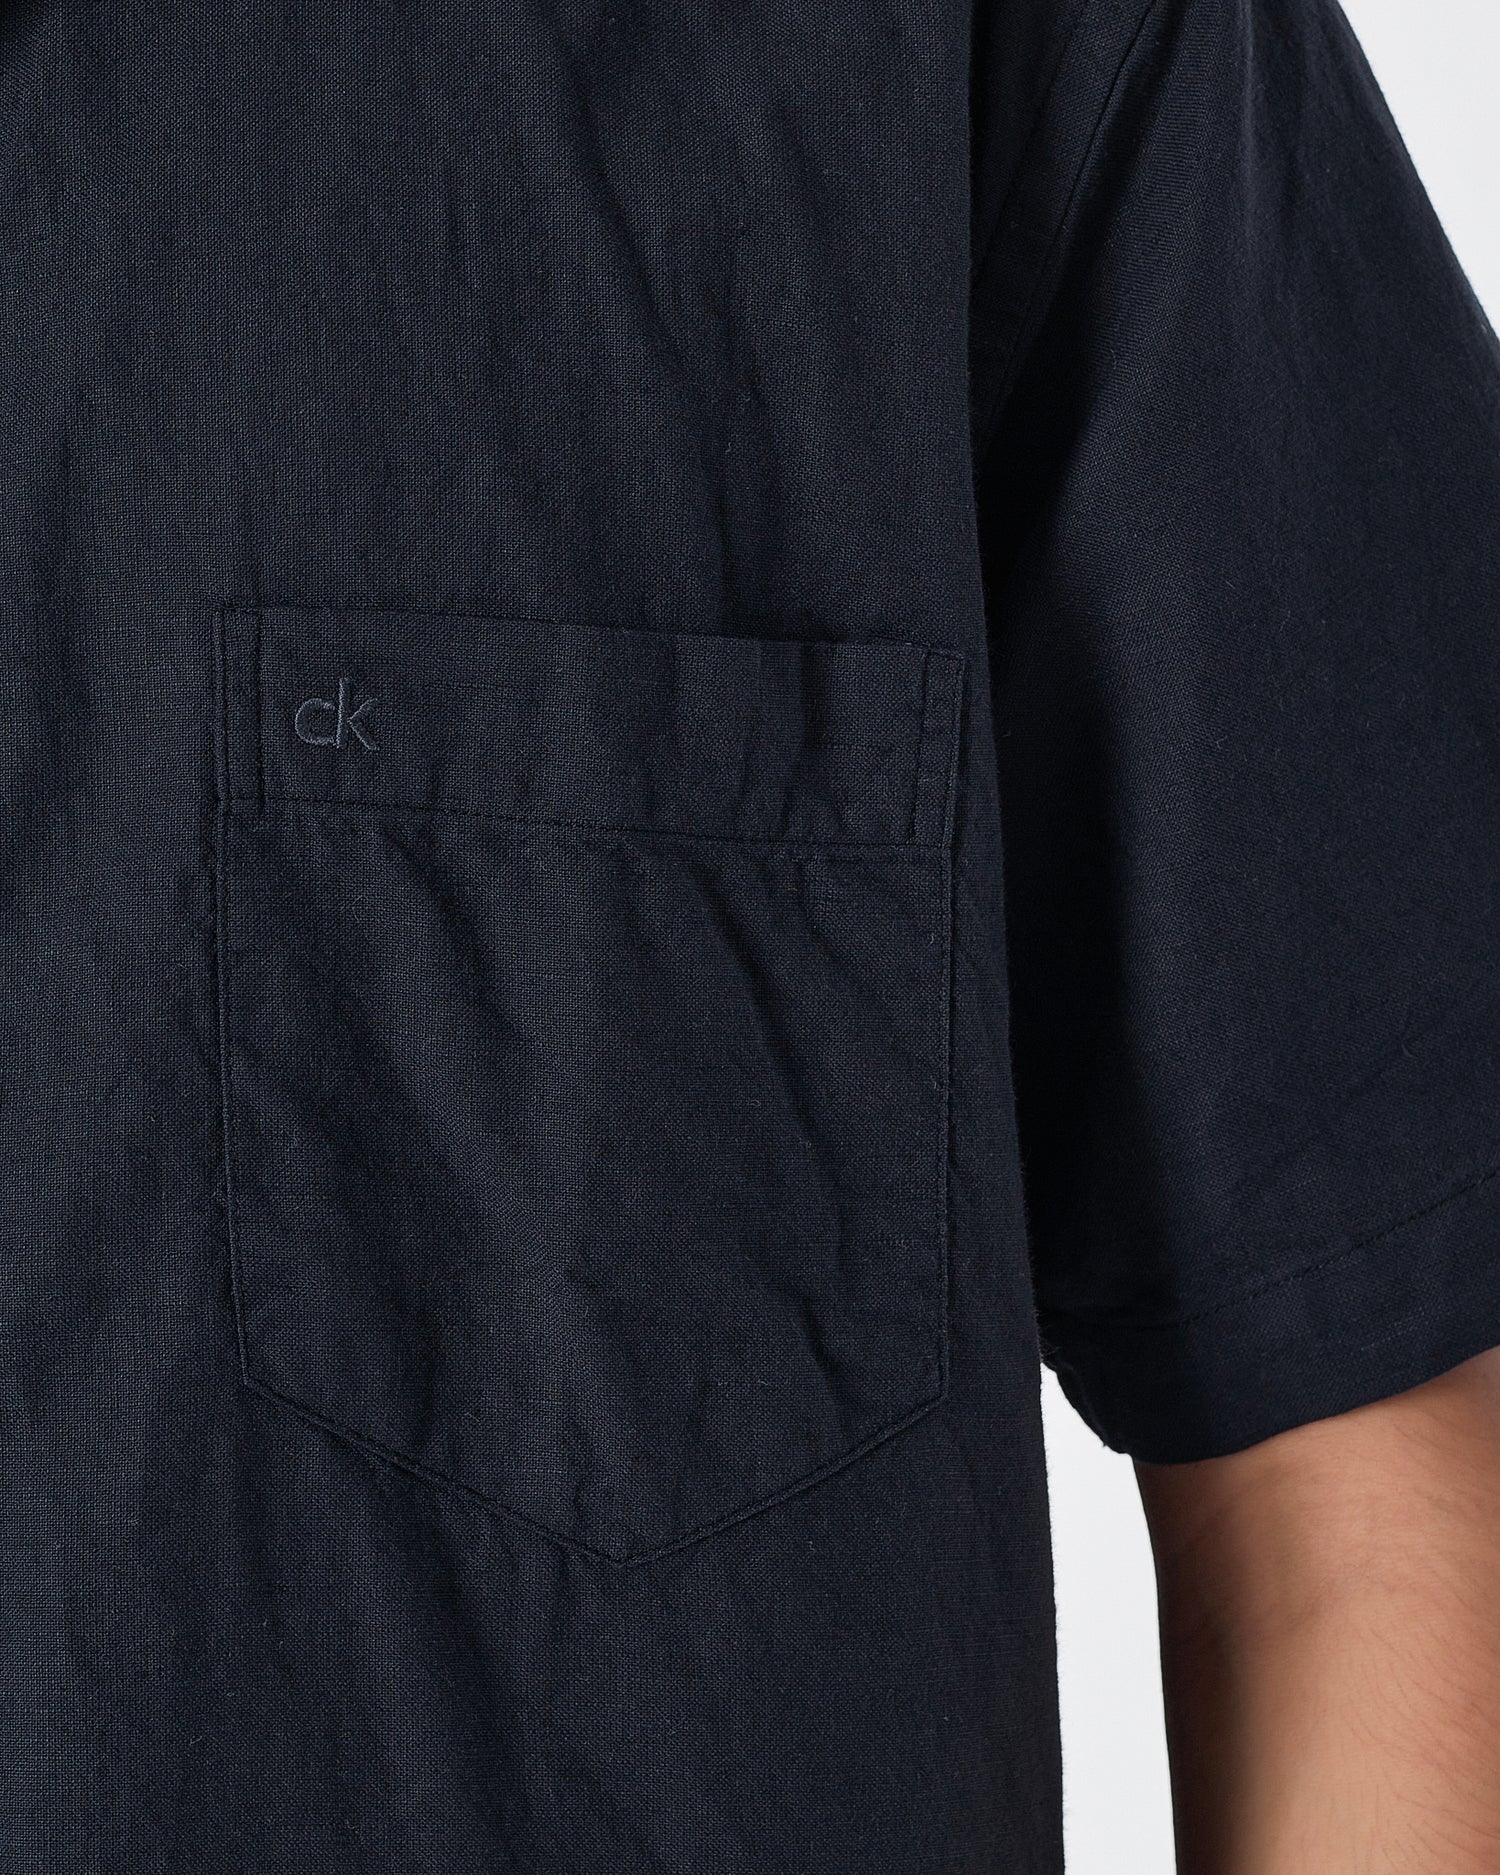 CK Linen Men Black Shirts Short Sleeve 20.90